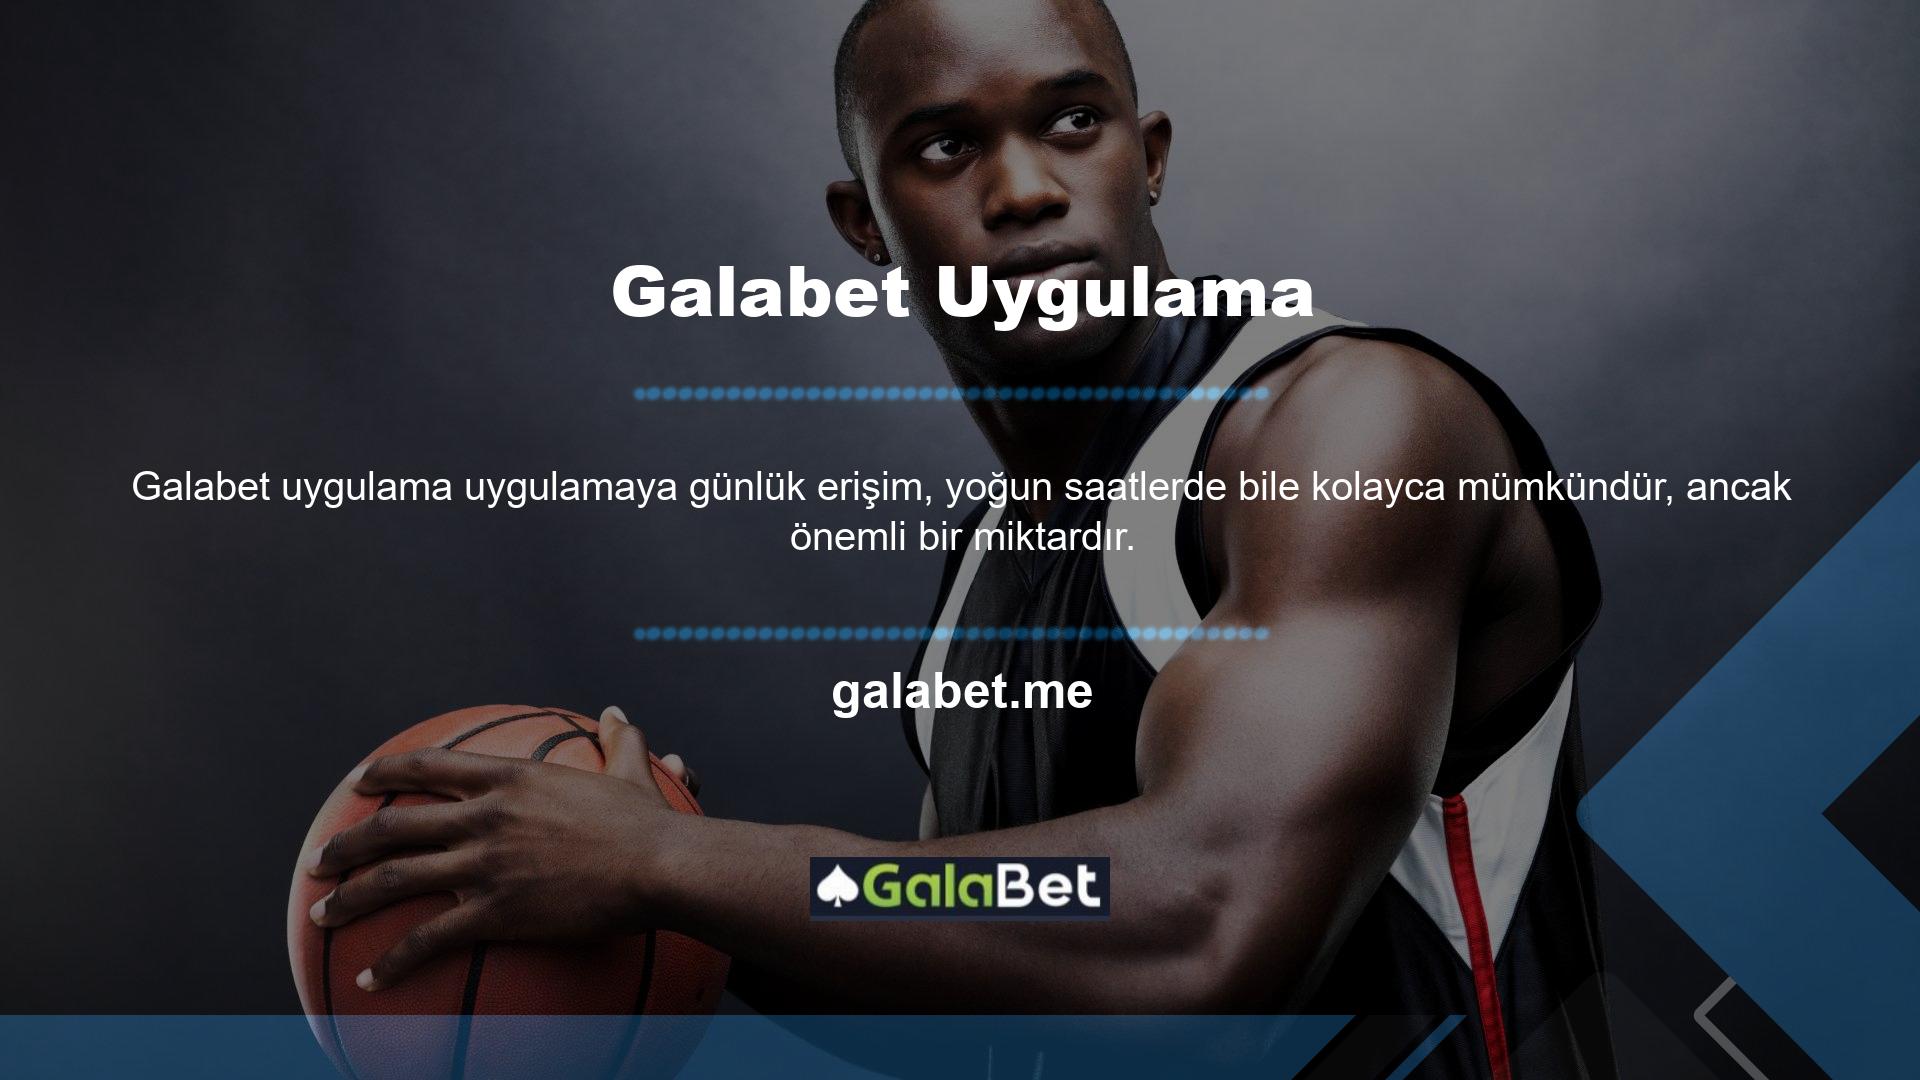 Çevrimiçi casino sitesi Galabet, çeşitli spor bahisleri ve casino oyunları kategorileri oluşturmuştur